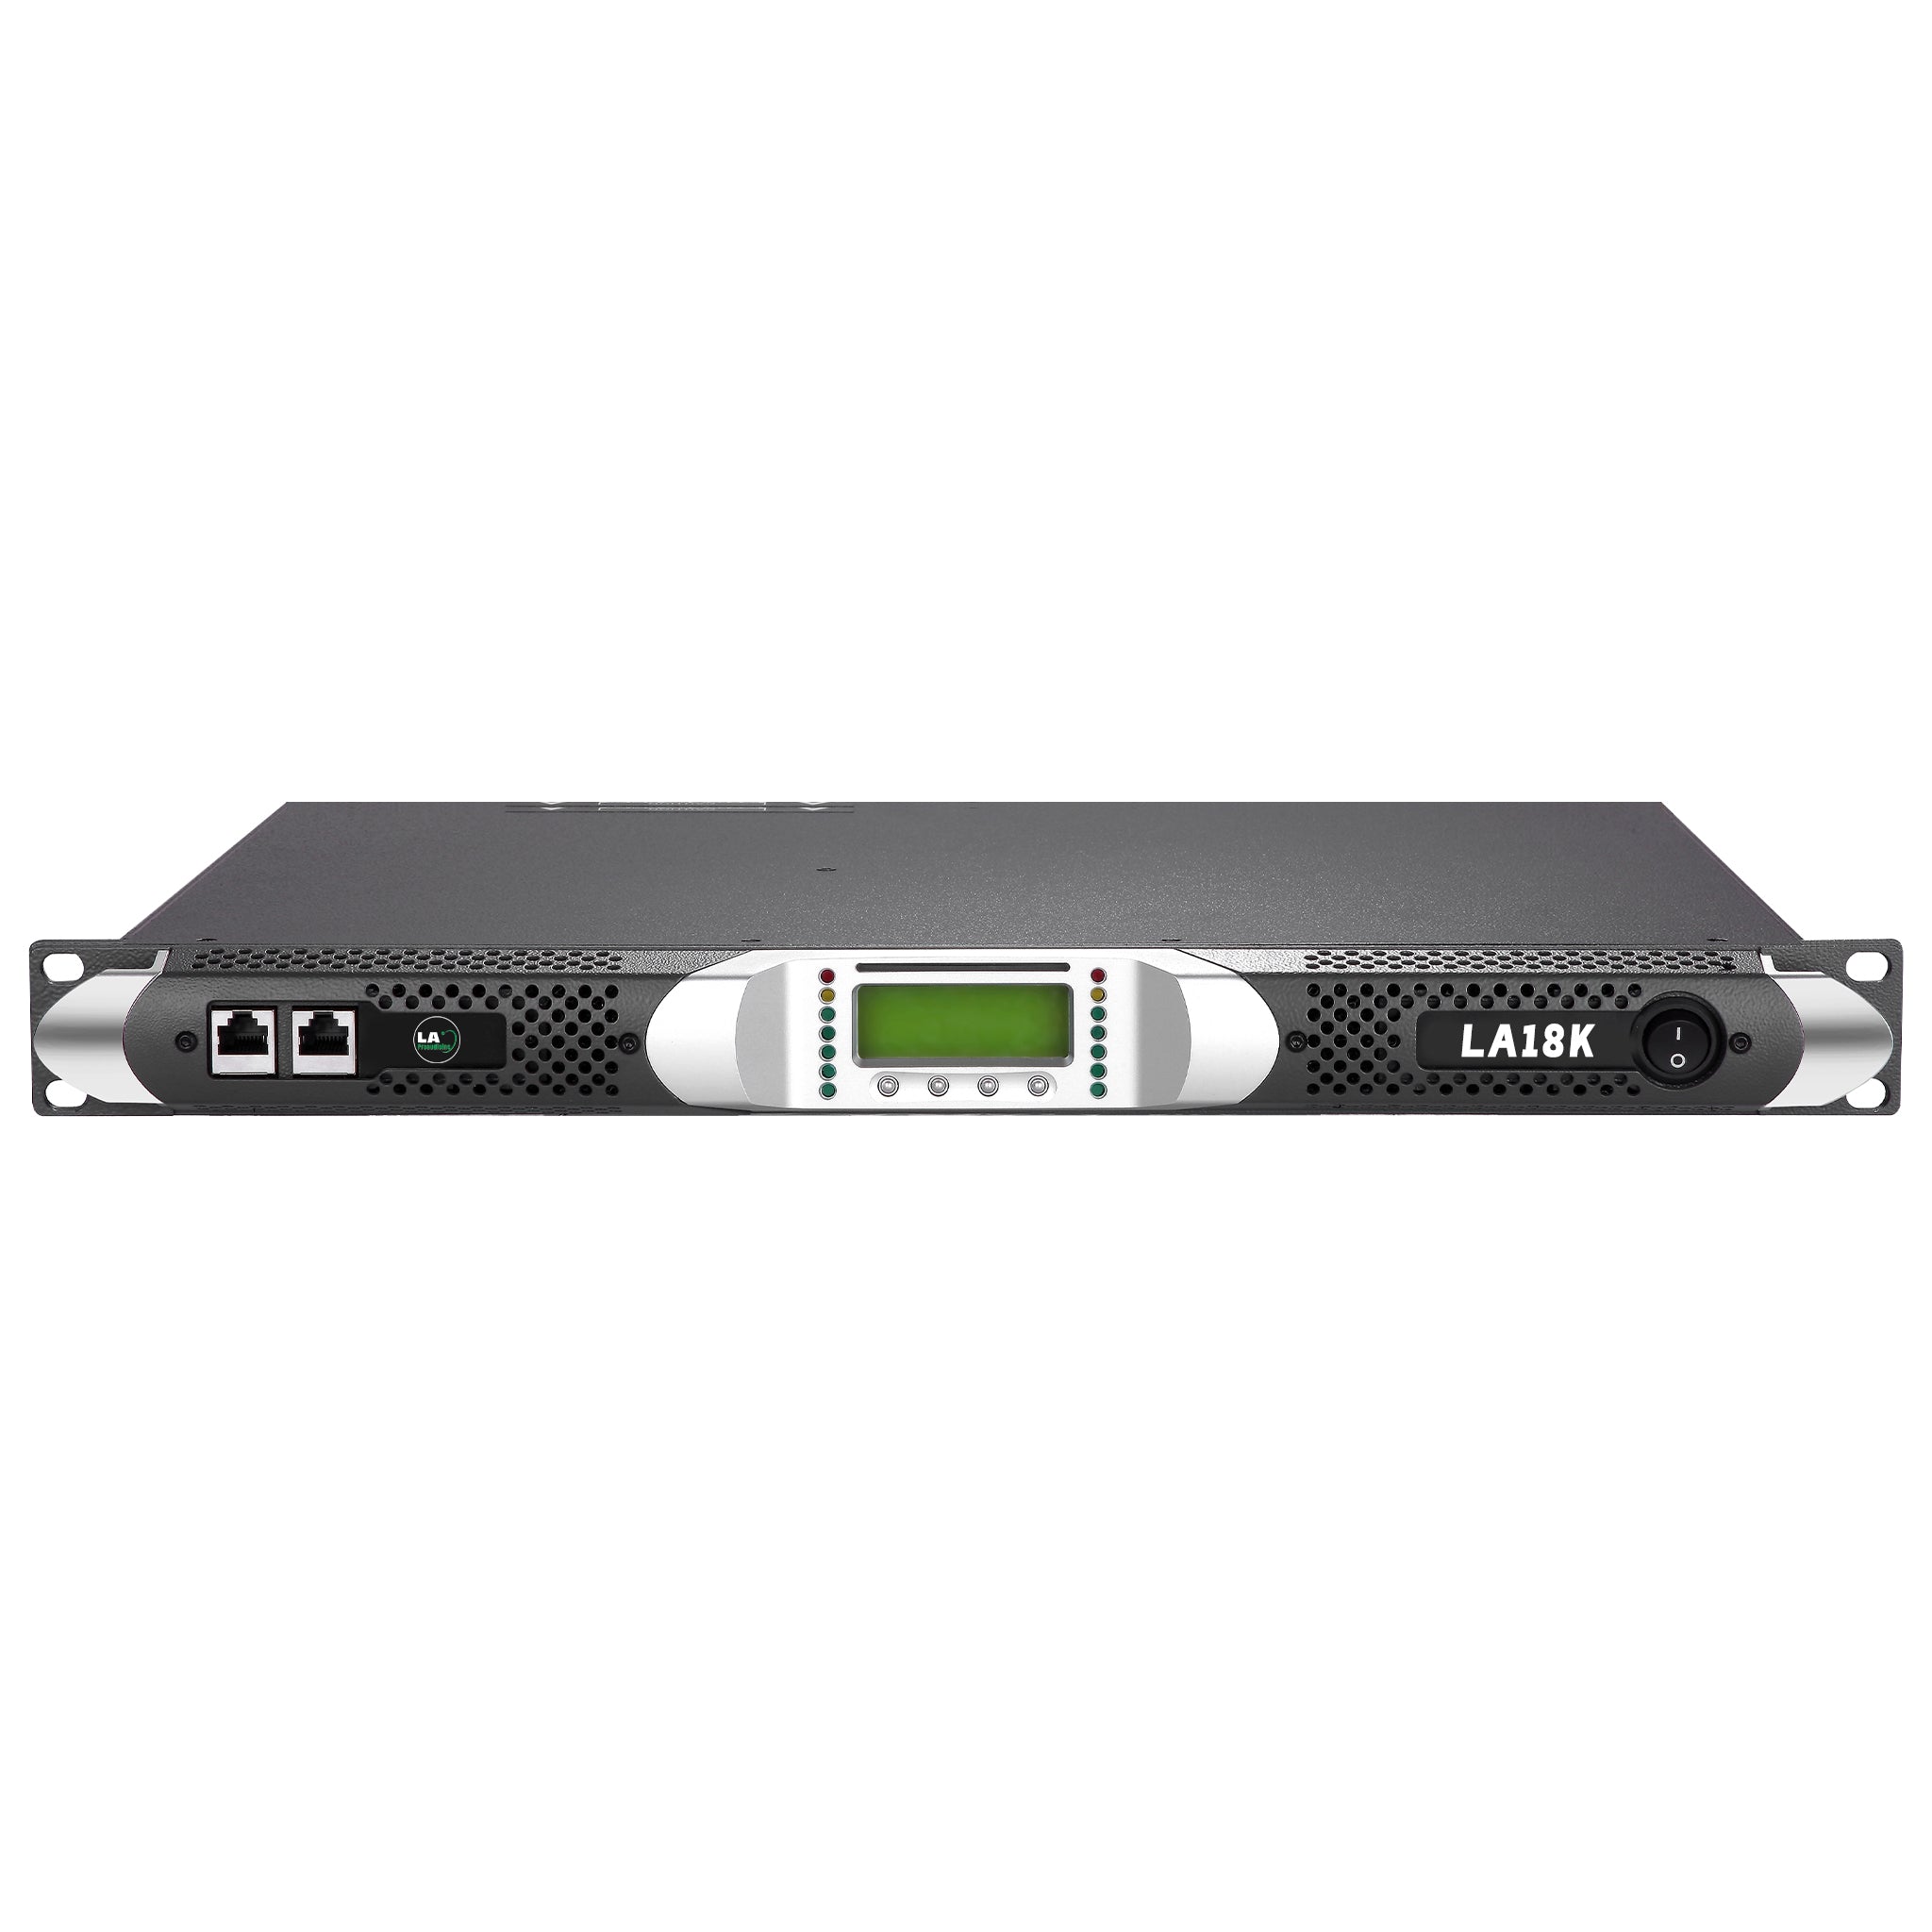 LA18K Dual Channel Digital Amplifier